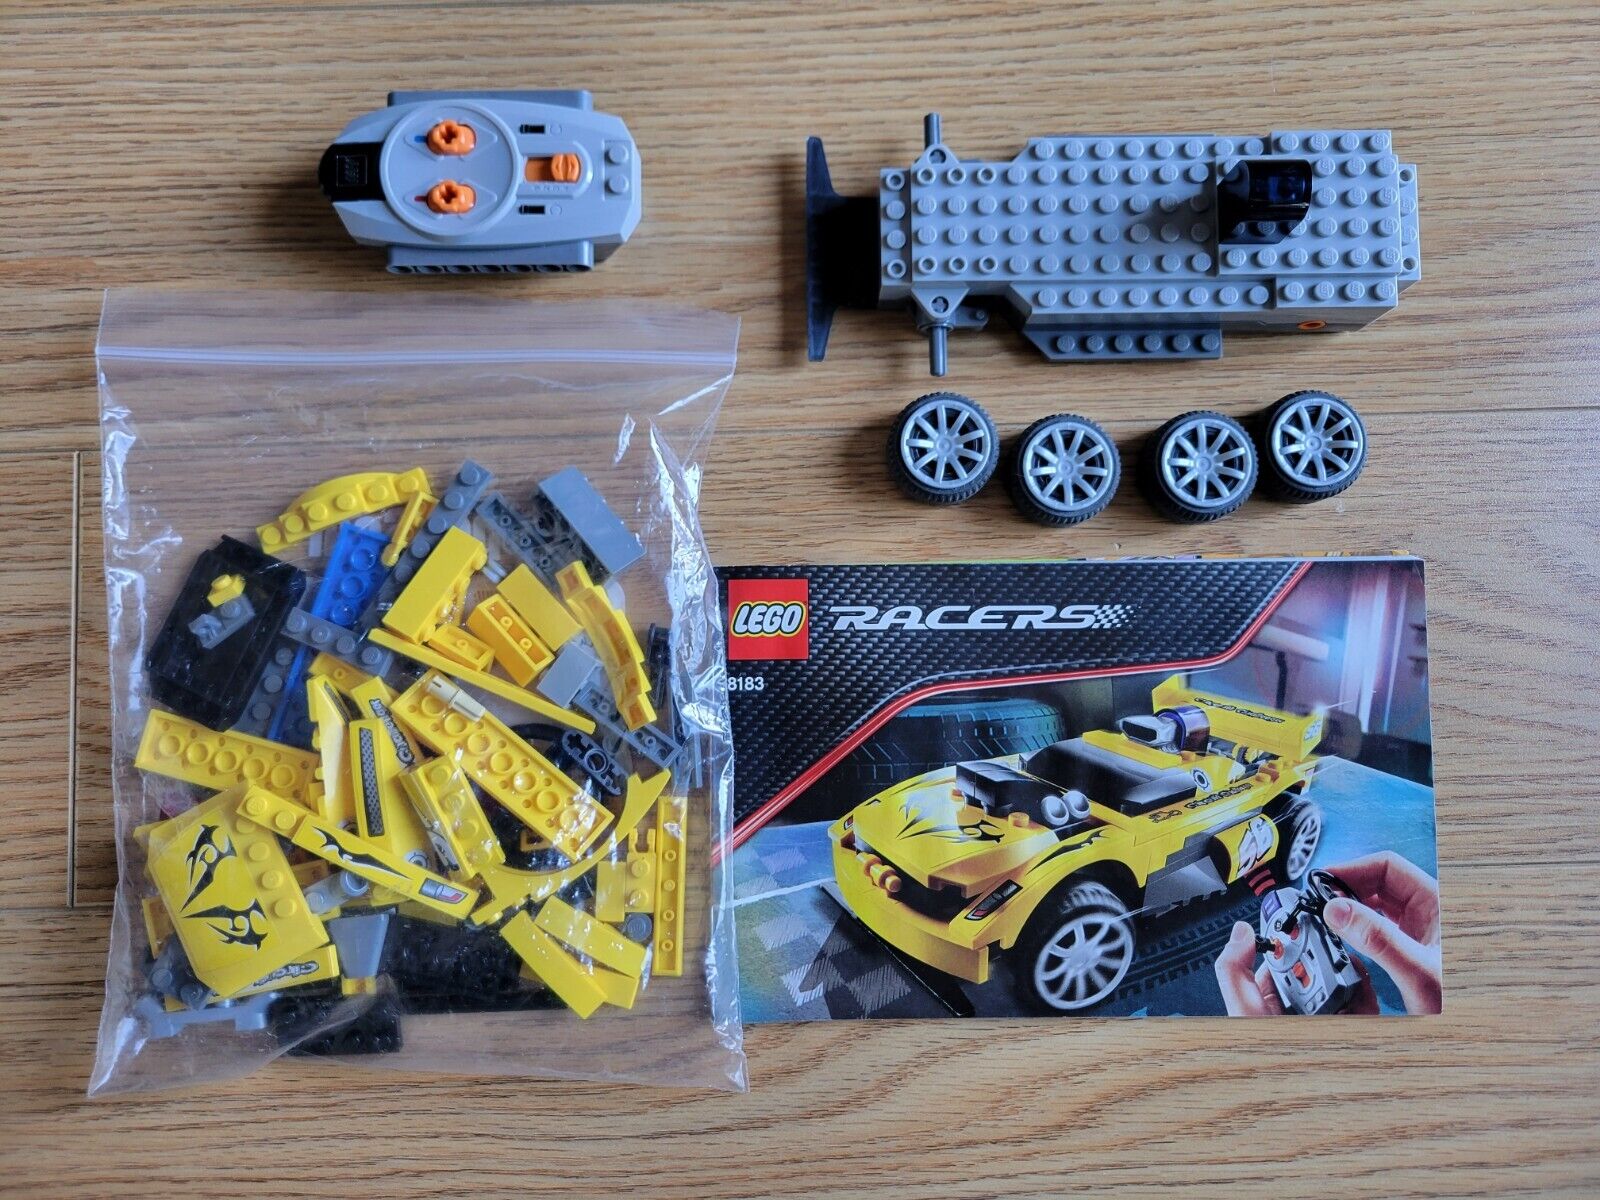 Kunstig ensidigt Hula hop LEGO Racers: Track Turbo RC (8183) for sale online | eBay